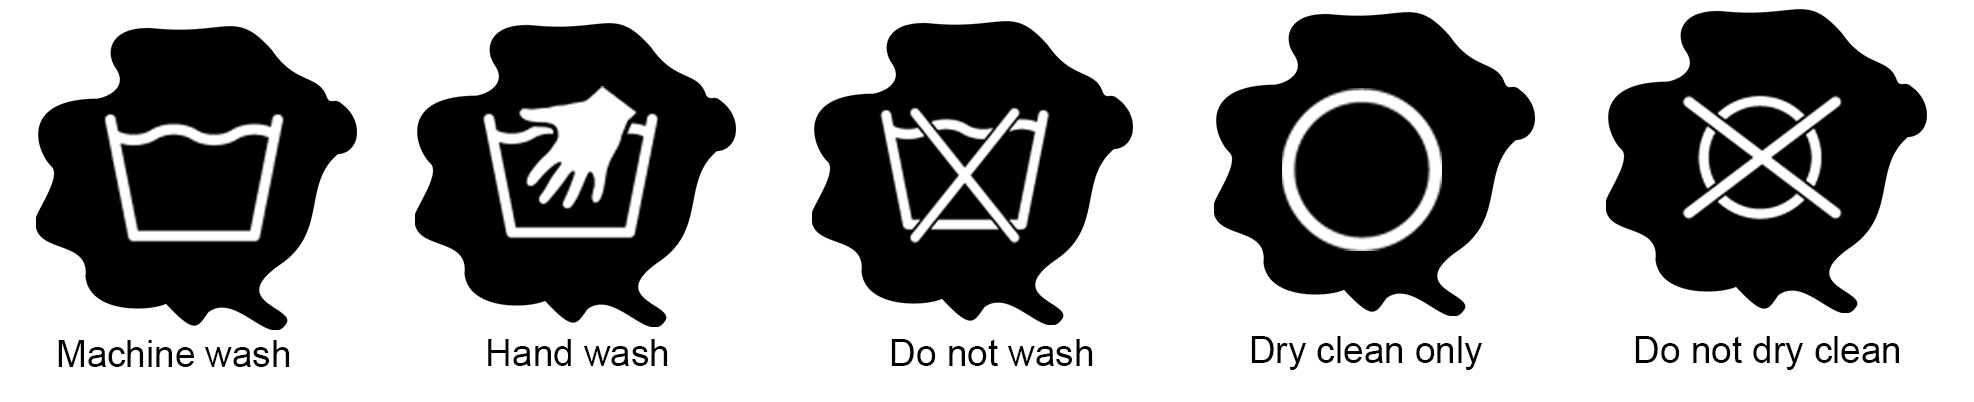 Washing Laundry Symbols